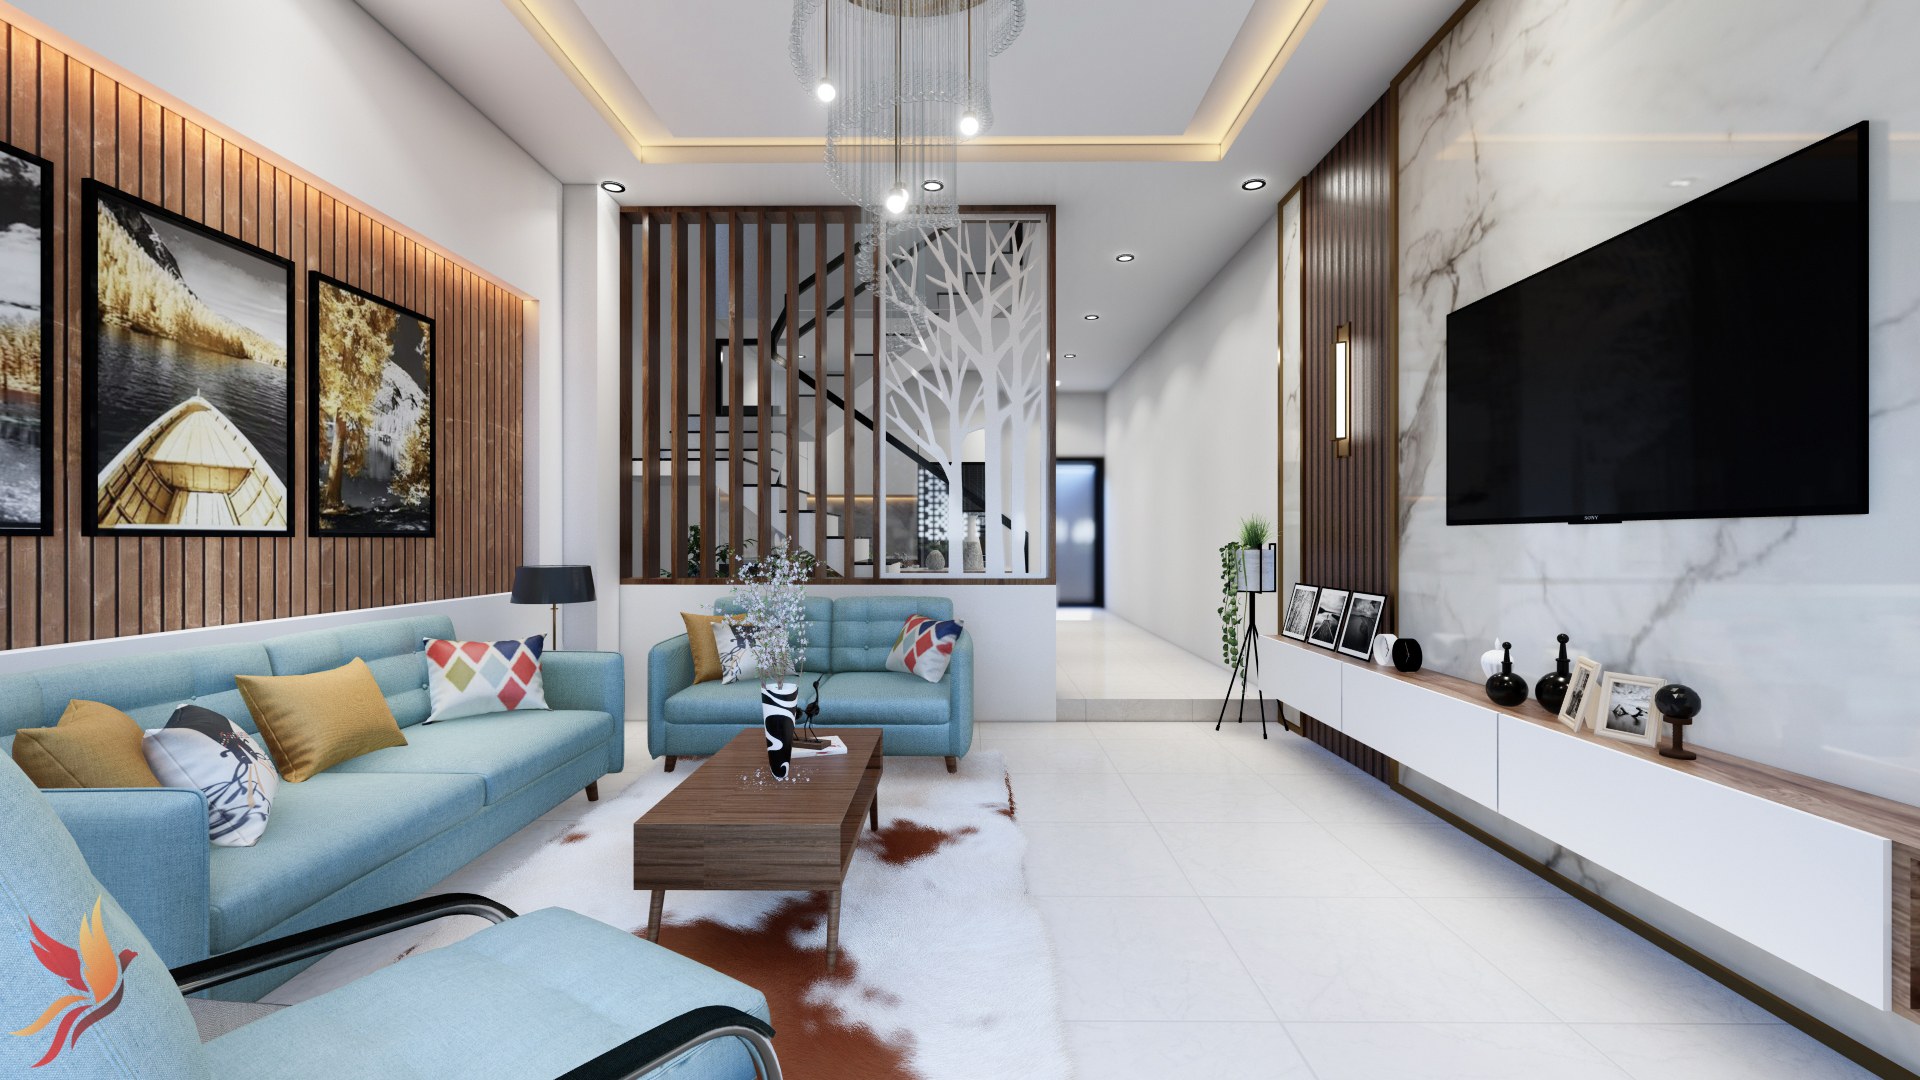 50 Mẫu phòng khách đẹp có cầu thang hot nhất 2020 – MẪU THIẾT KẾ NHÀ ĐẸP MỚI